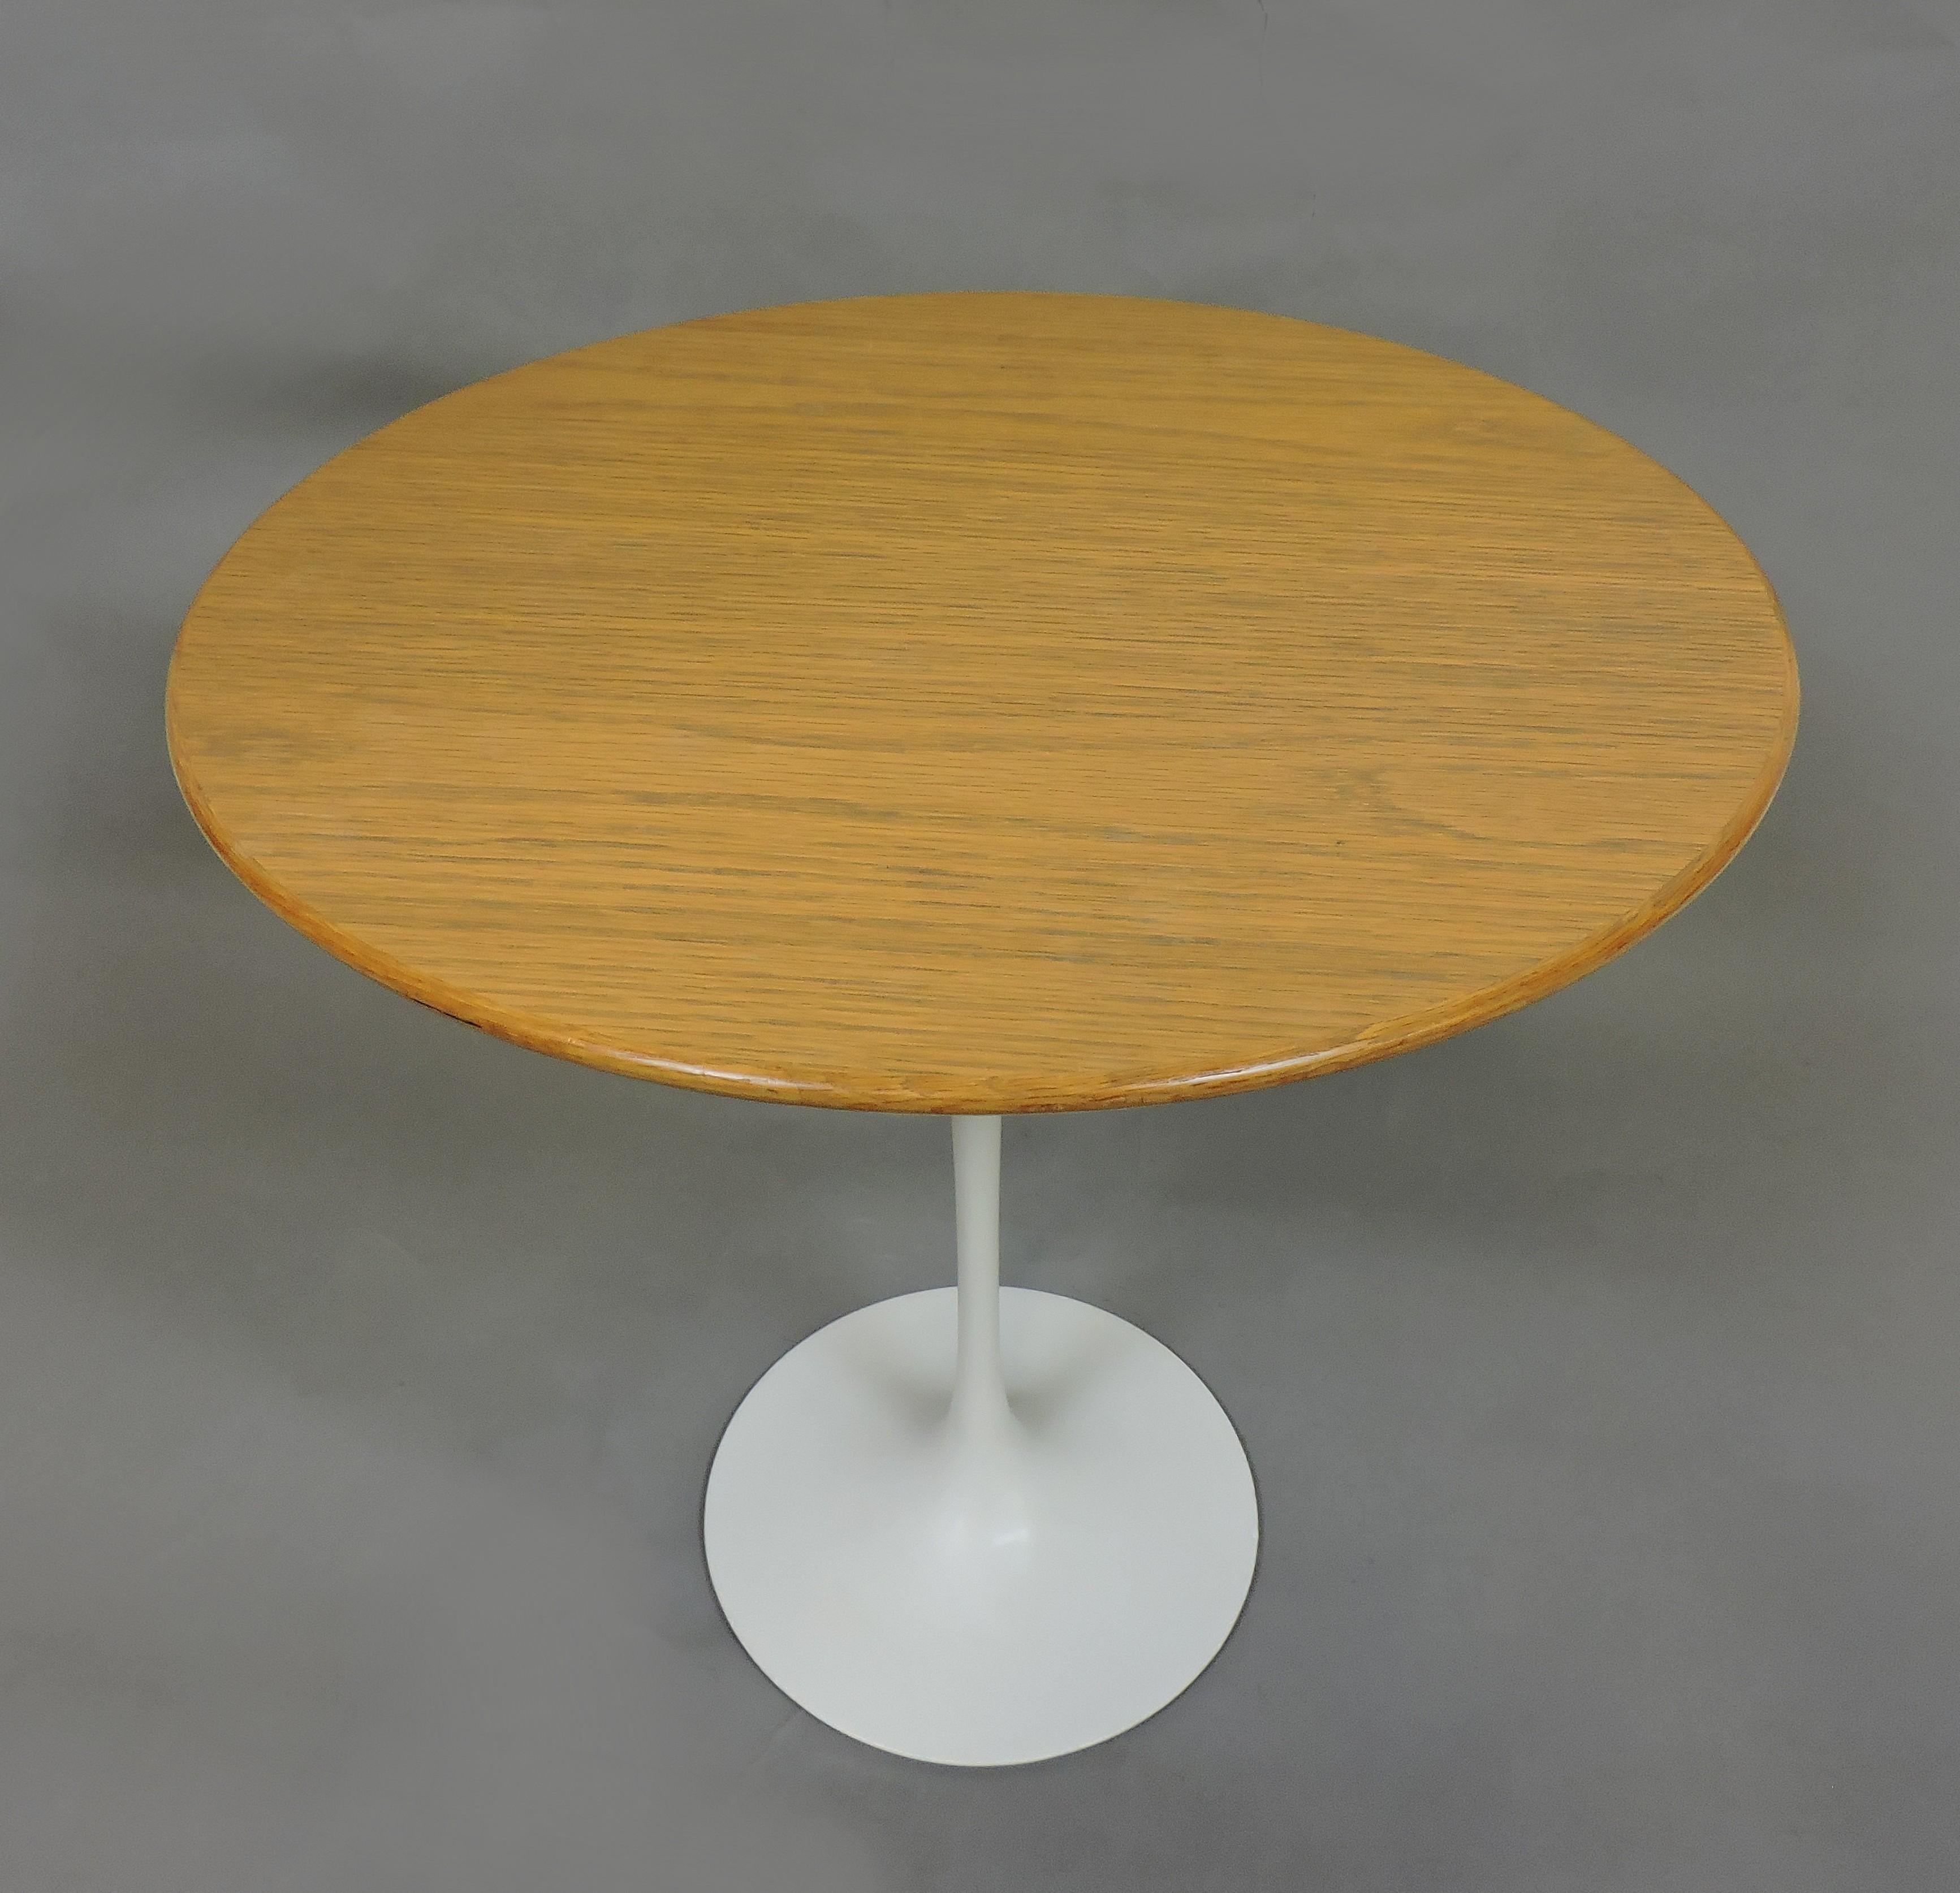 Table d'appoint classique en forme de tulipe conçue par Eero Saarinen et fabriquée par Knoll. Cette table a un plateau en chêne de 20 pouces de diamètre, une base blanche sur piédestal, et a été fabriquée en 1978. Étiquette Knoll en dessous.